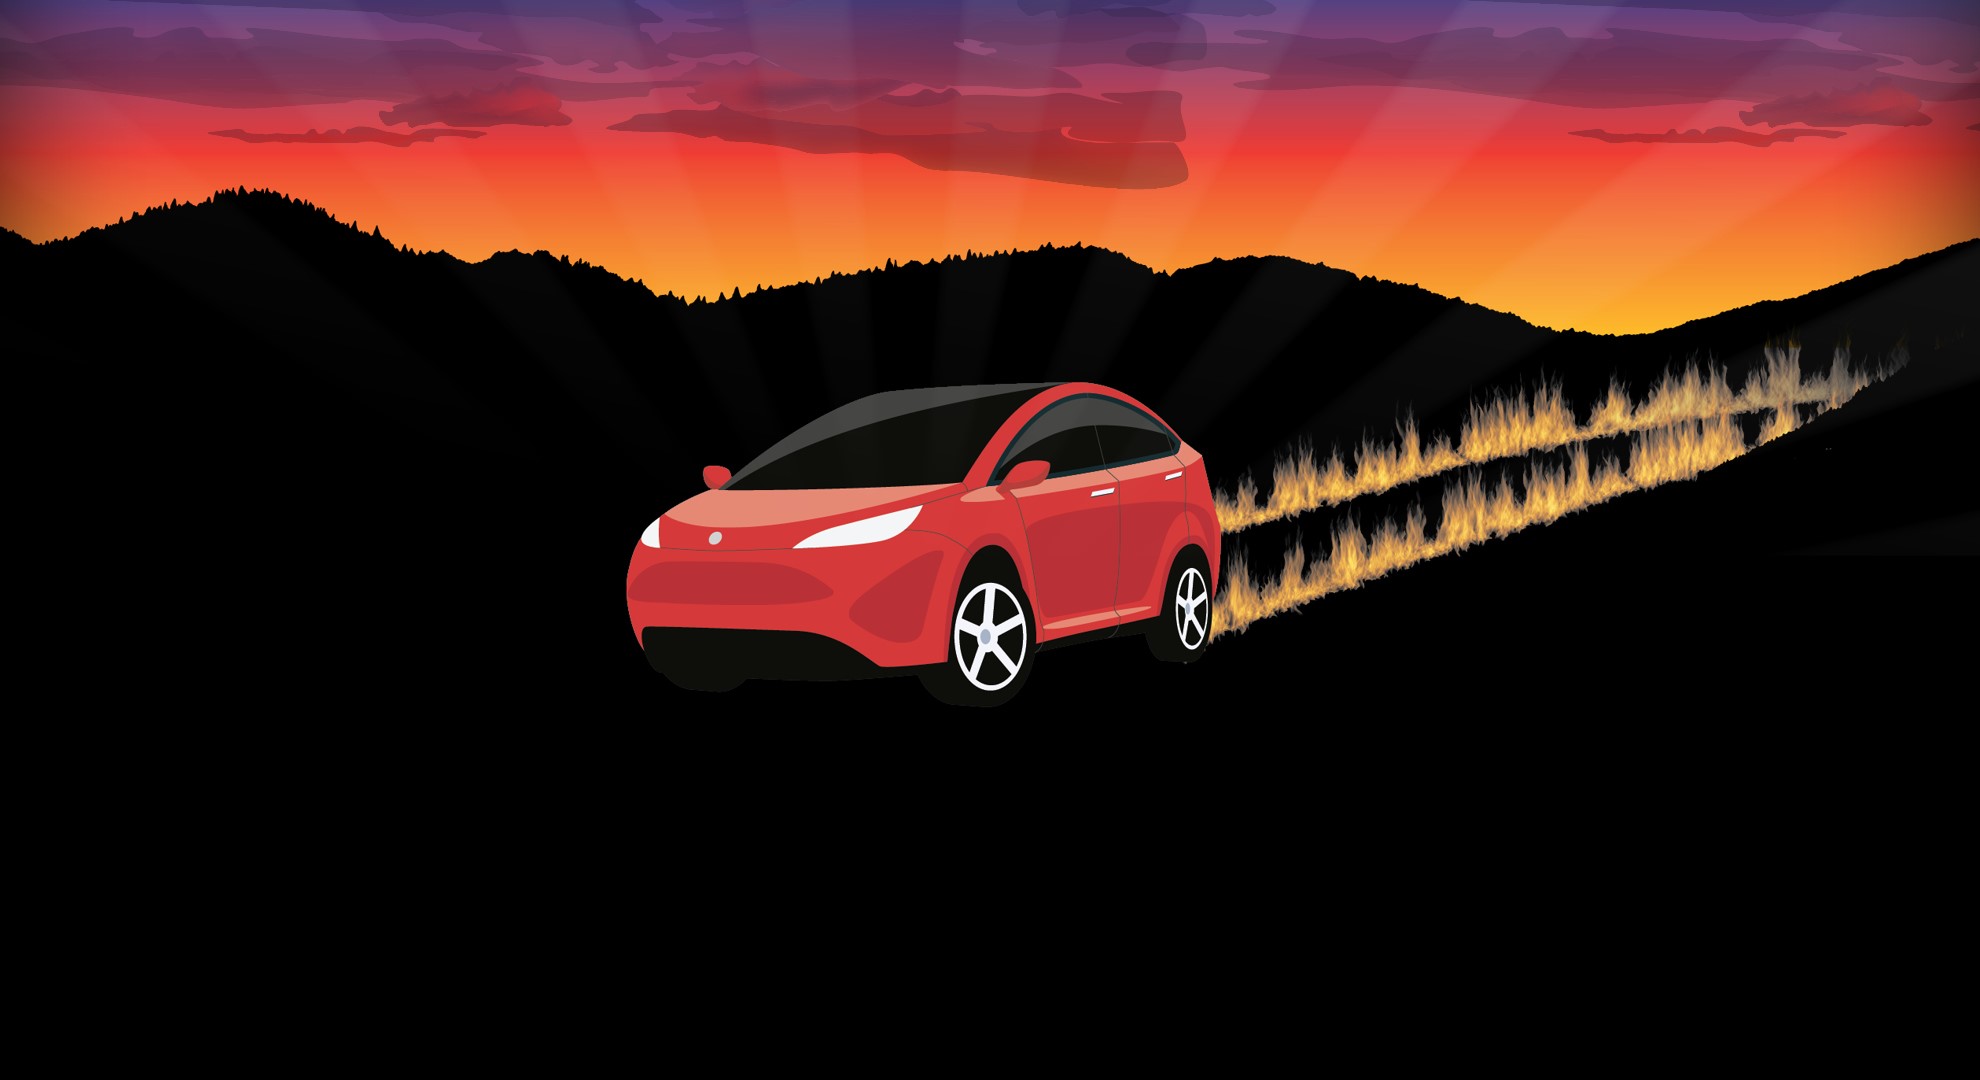 Artwork with car blazing a fast trail